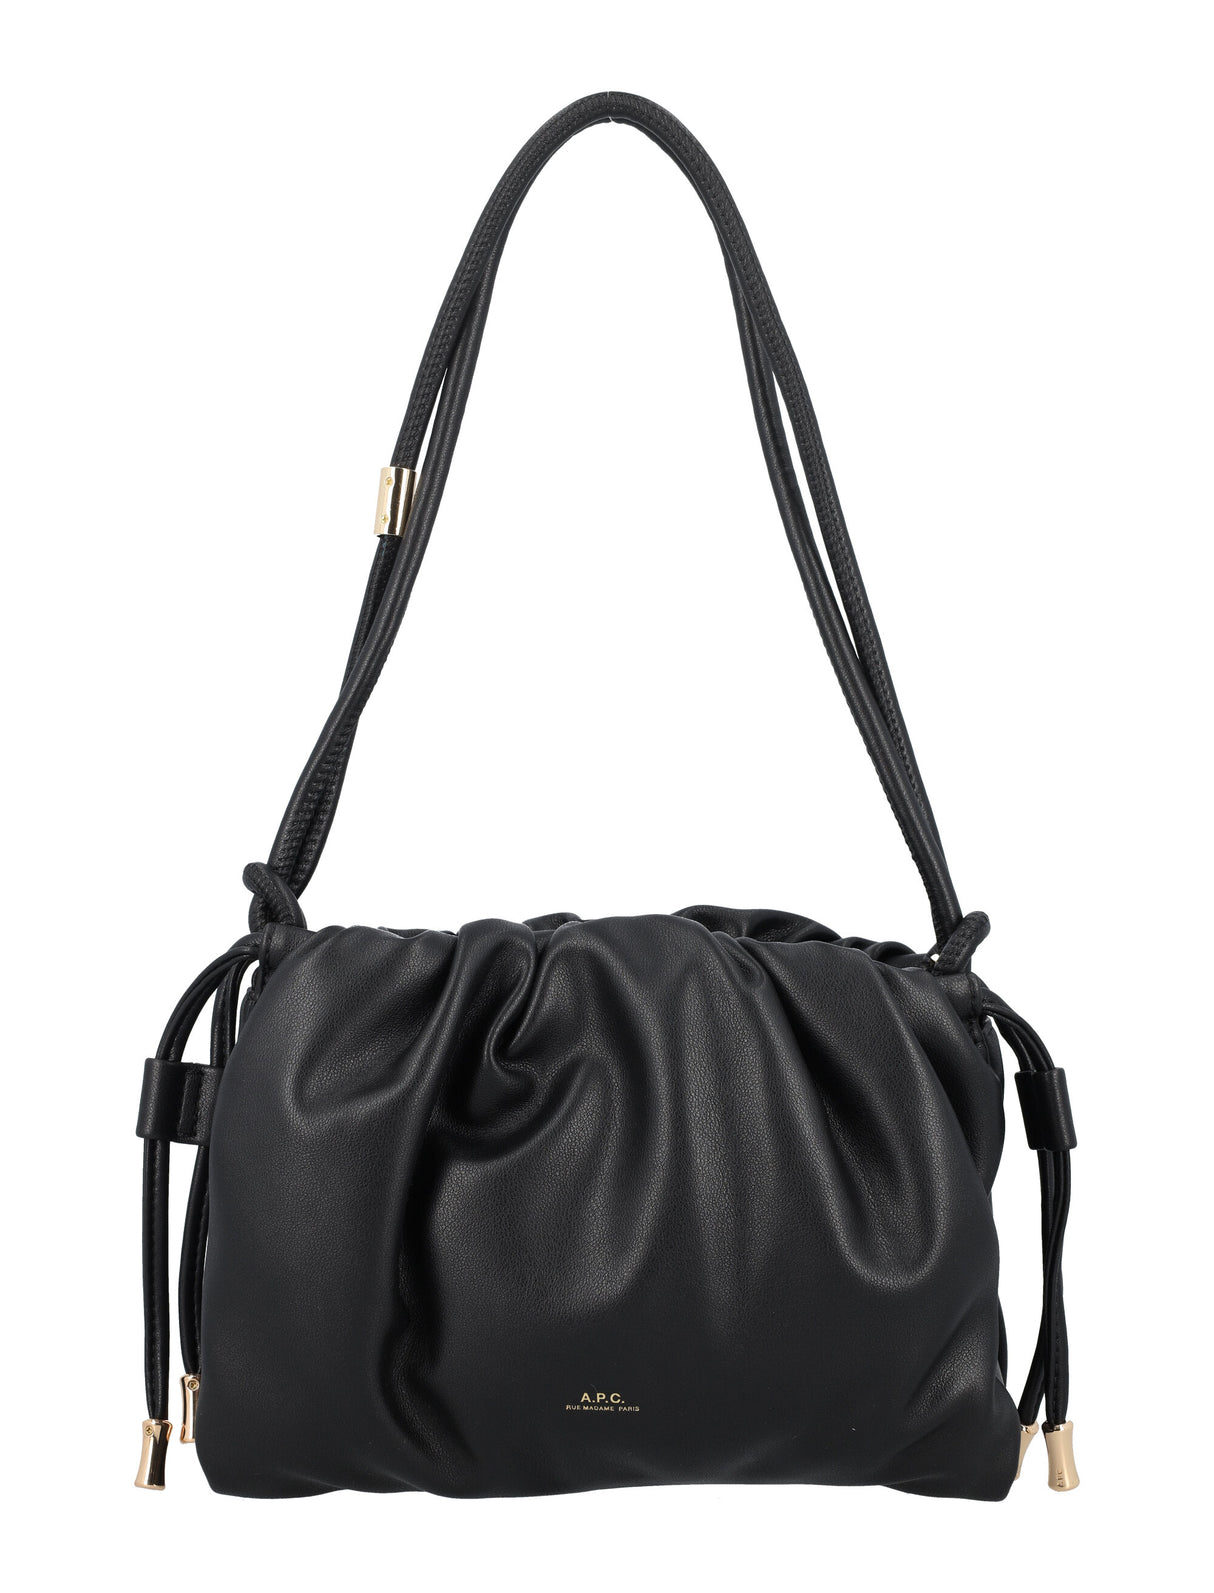 Túi xách nhỏ đen thanh lịch với chi tiết mạ vàng dành cho phụ nữ